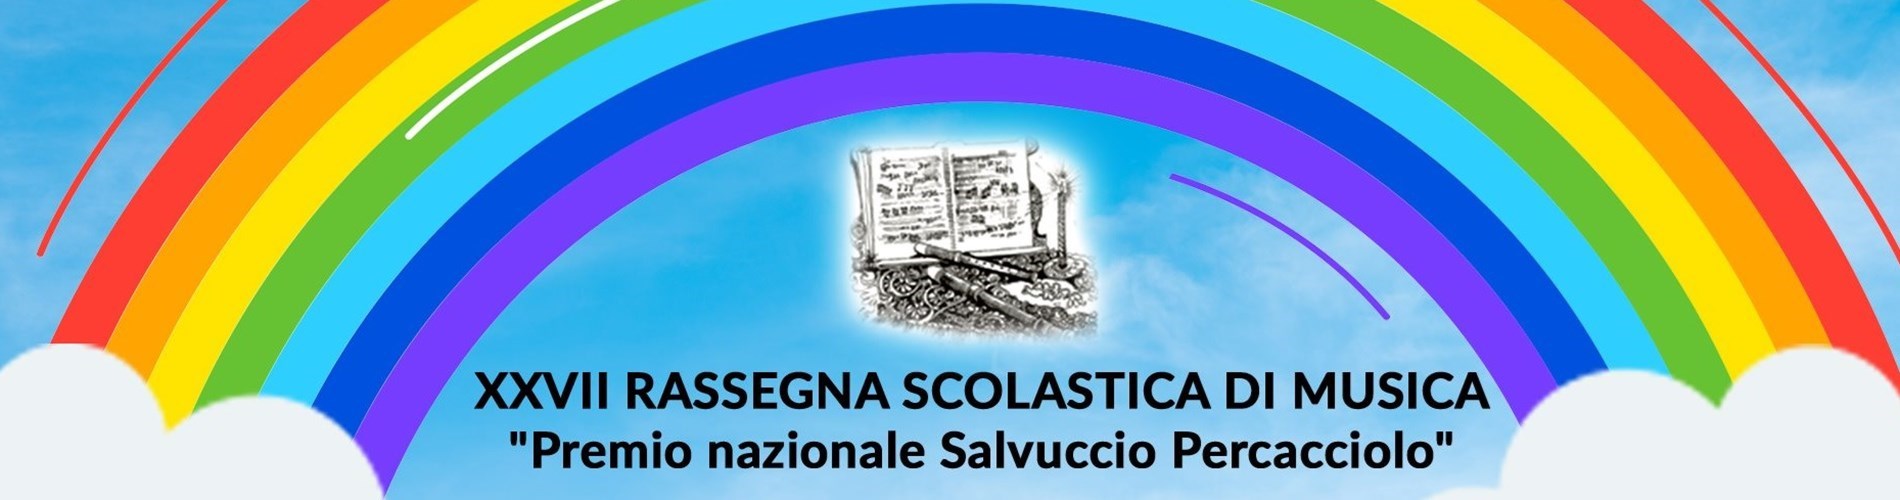 XXVII Rassegna scolastica di musica premio nazionale "Salvuccio Percacciolo" - Scadenza 5 giugno 2021